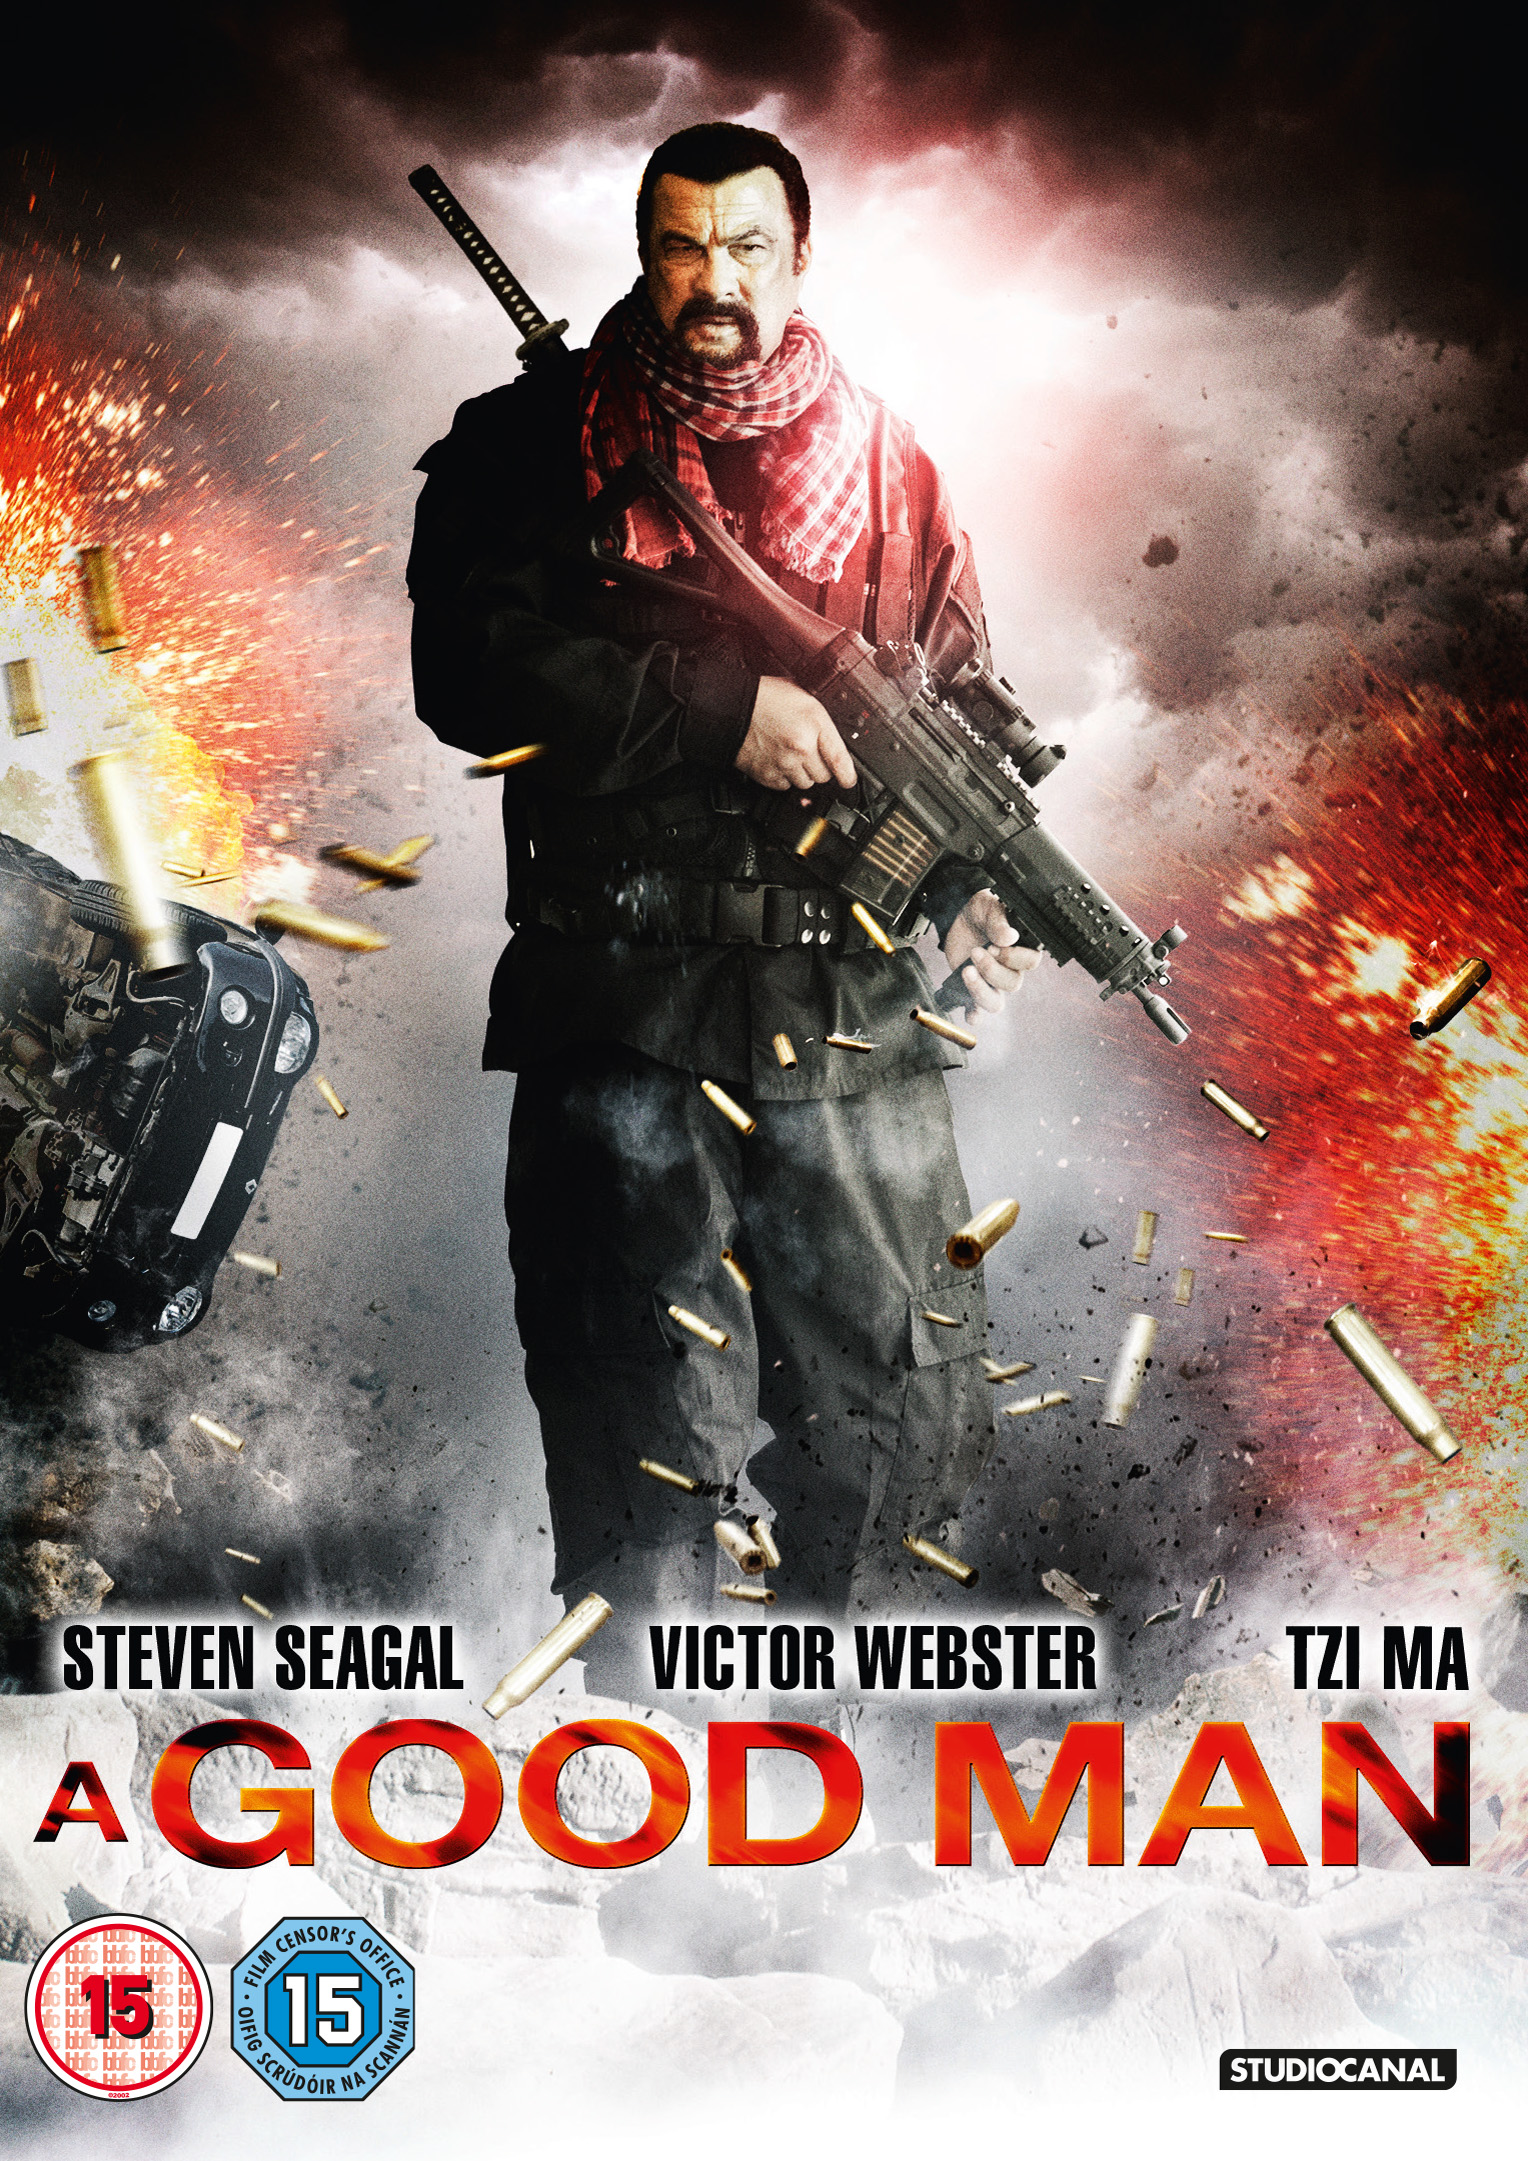 A Good Man A Good Man (2014) Film CineMagia.ro